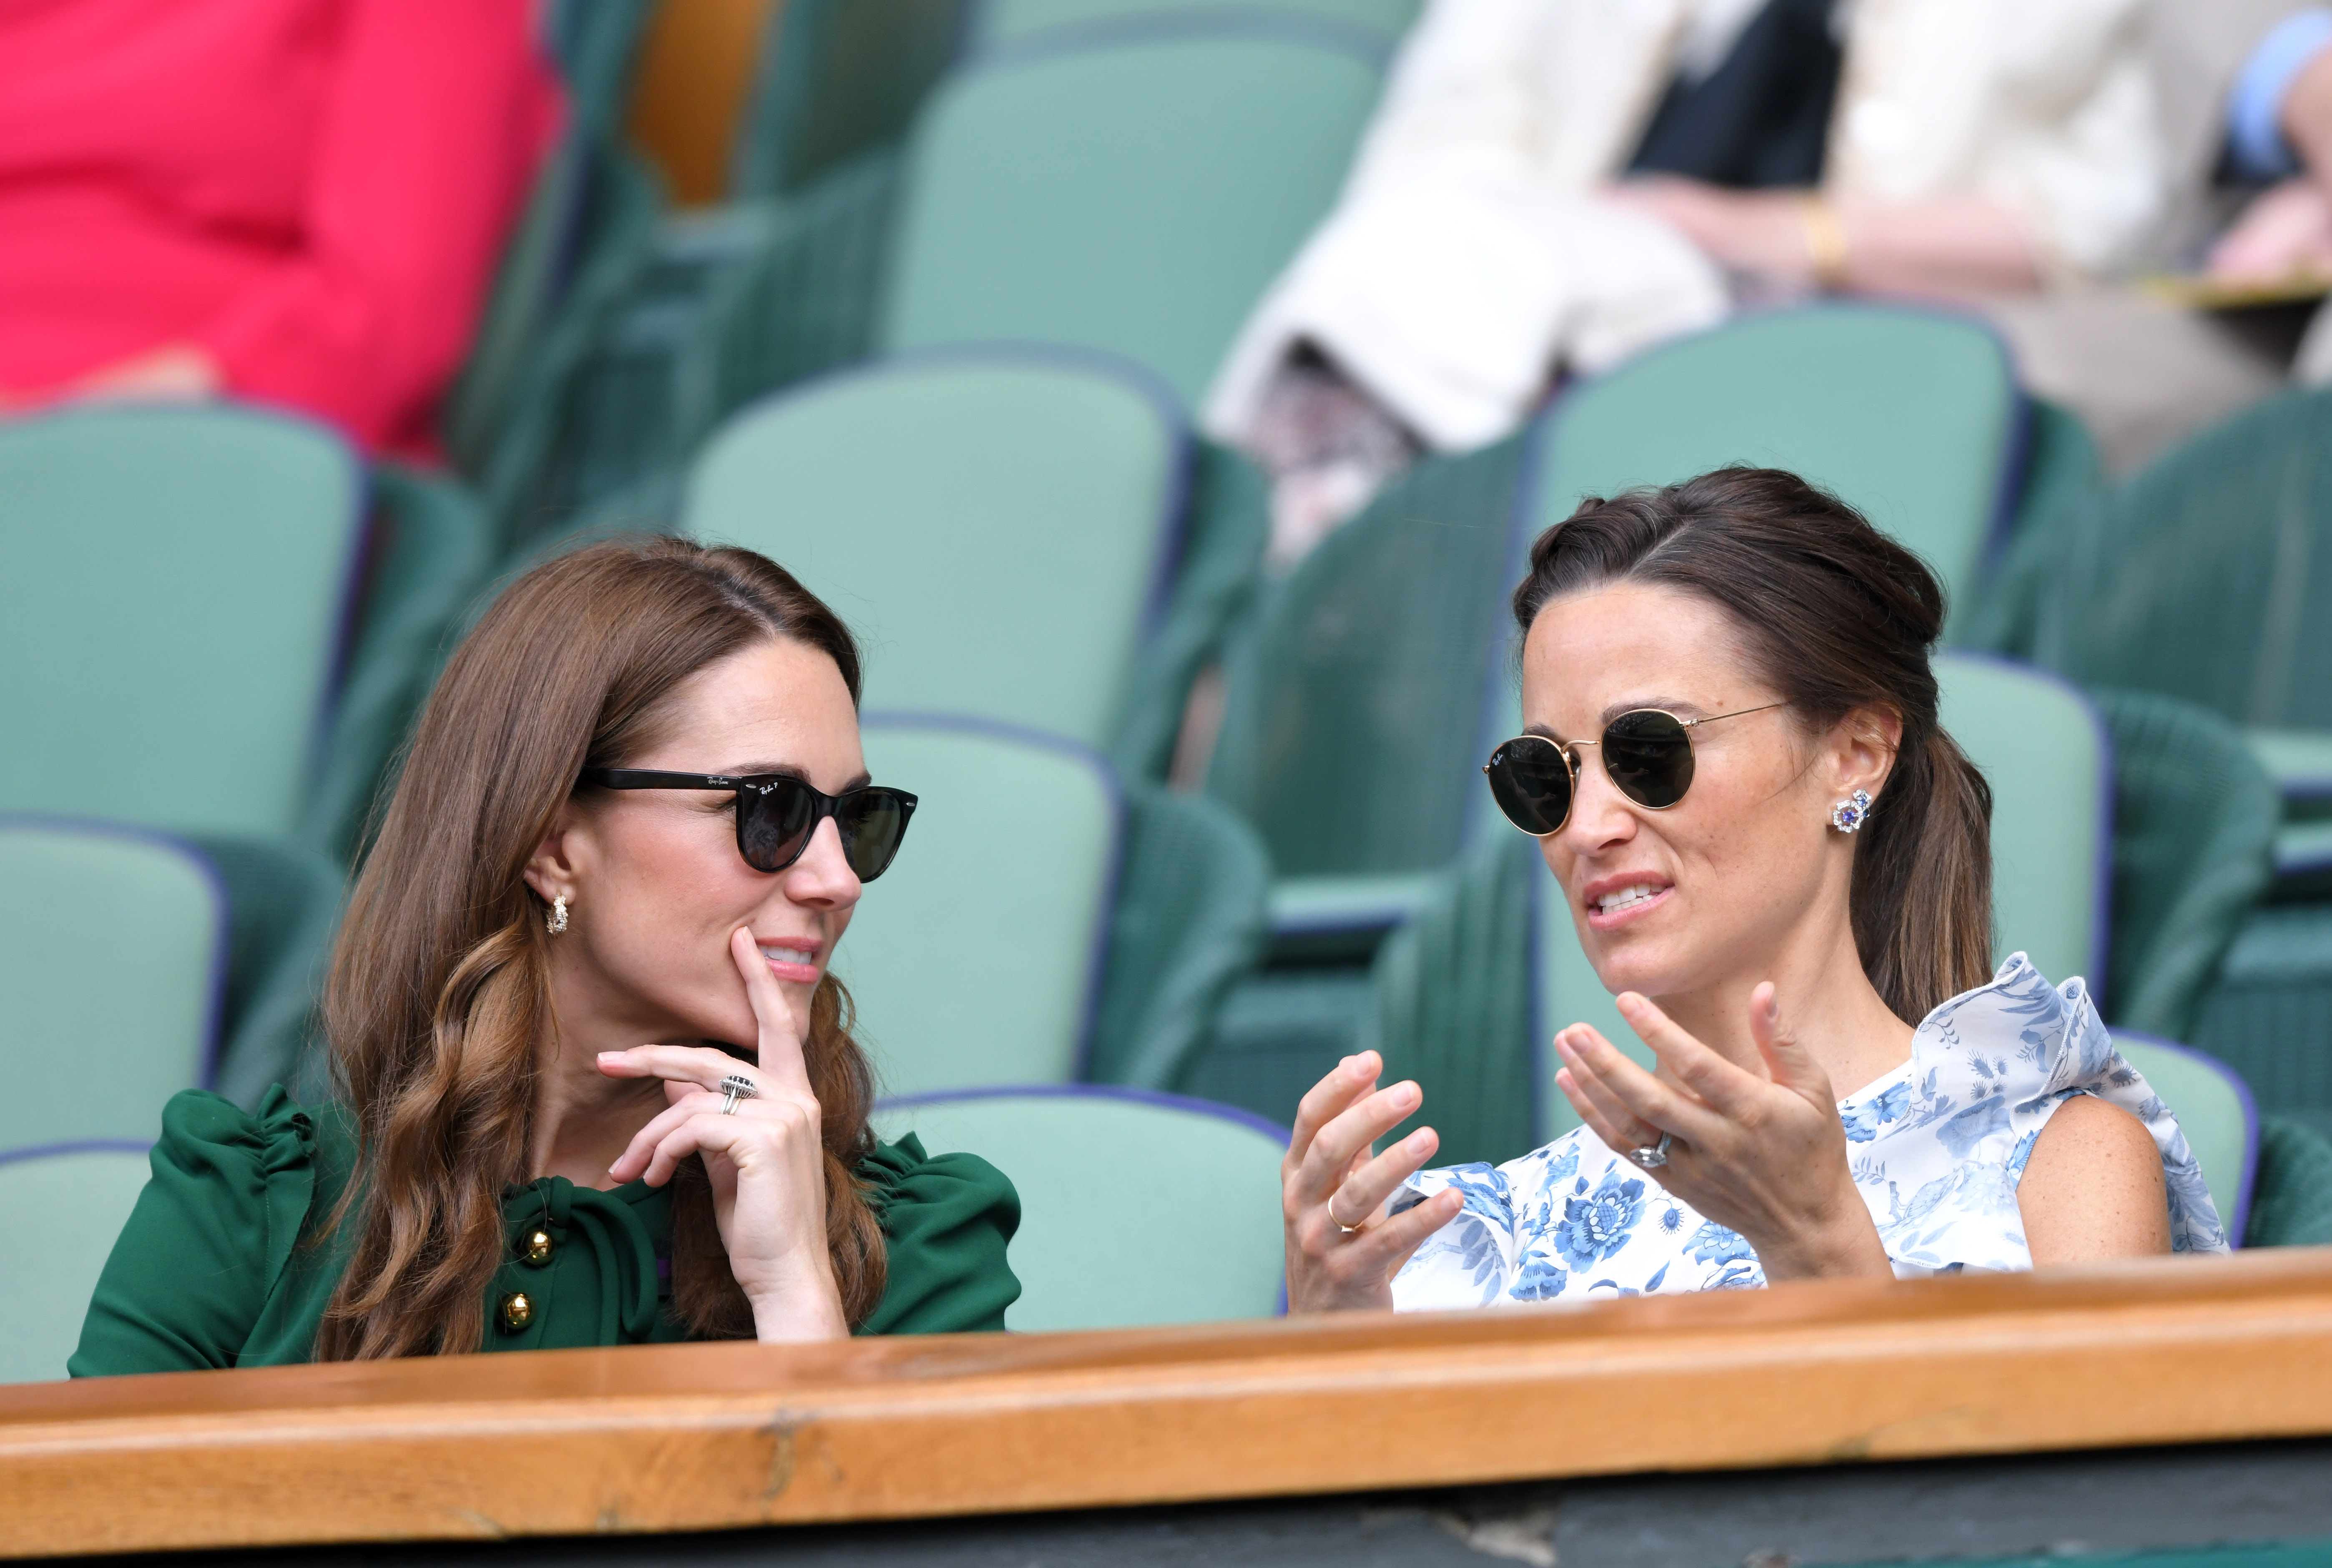 Prinzessin Catherine und Pippa Middleton bei den Wimbledon Tennis Championships in London, England am 13. Juli 2019 | Quelle: Getty Images